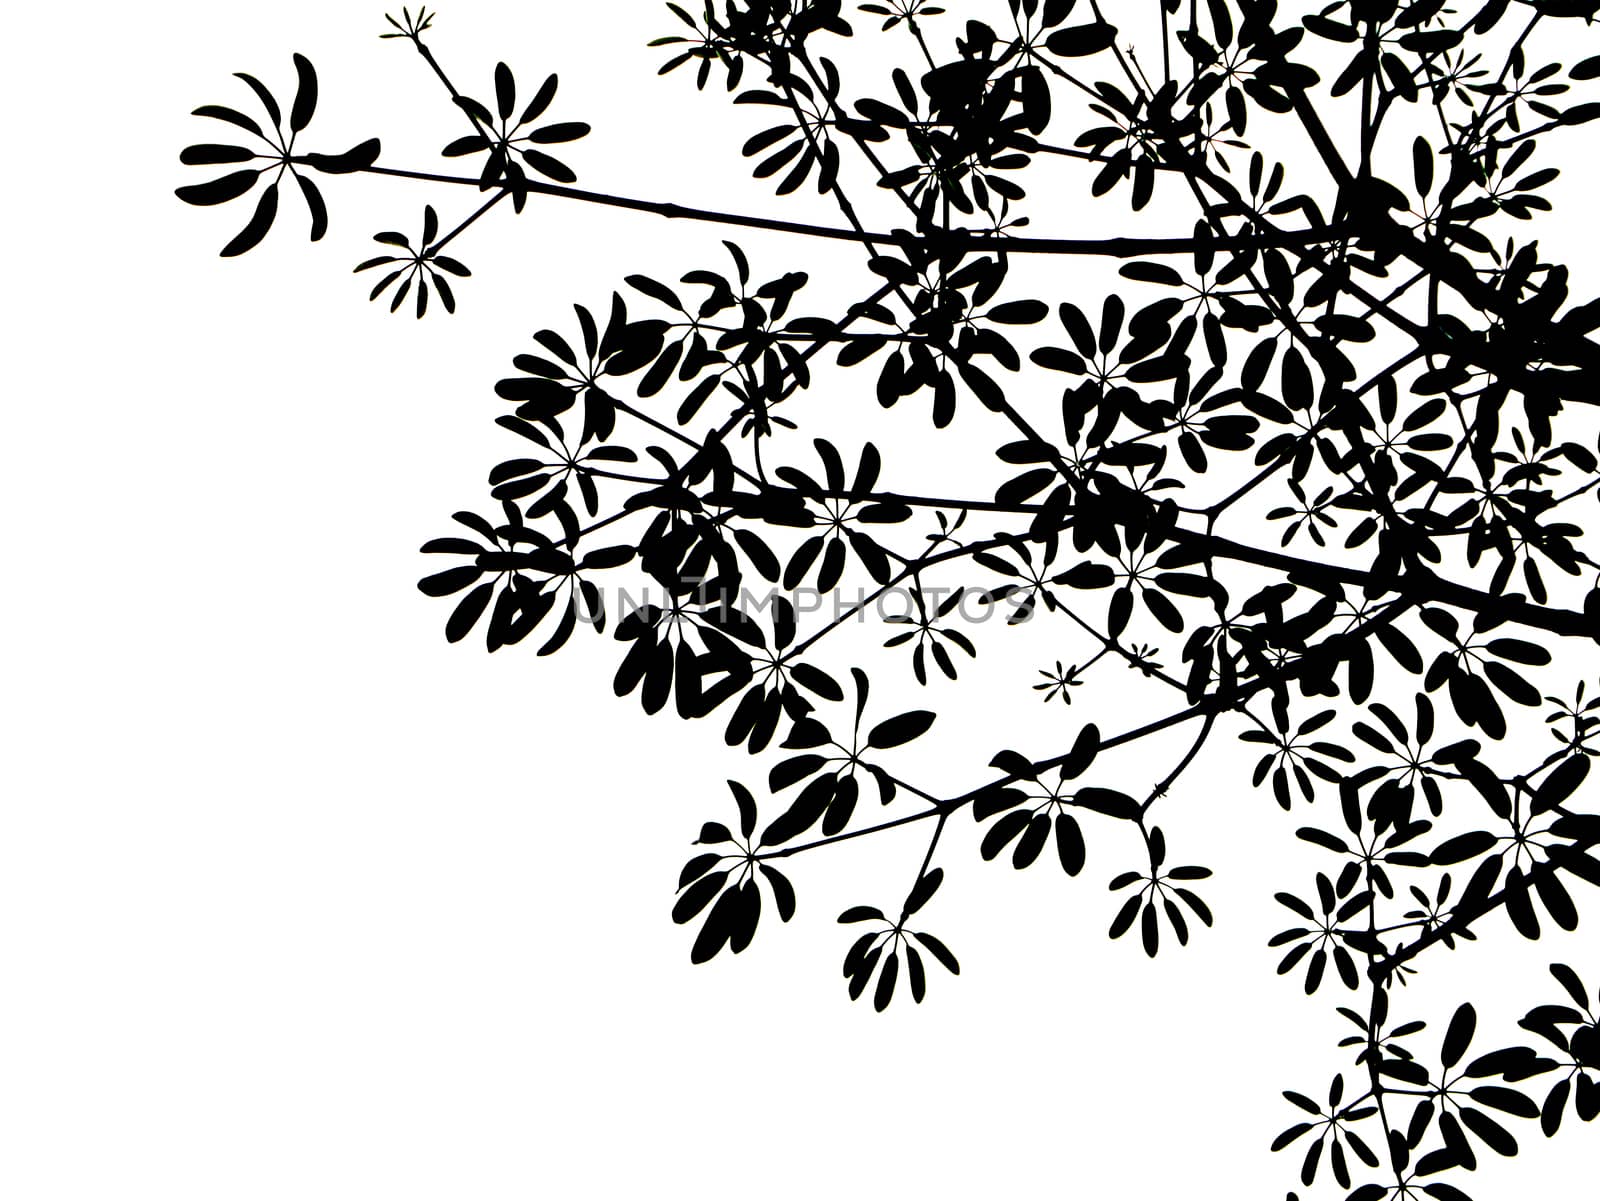 black leaves on white background.